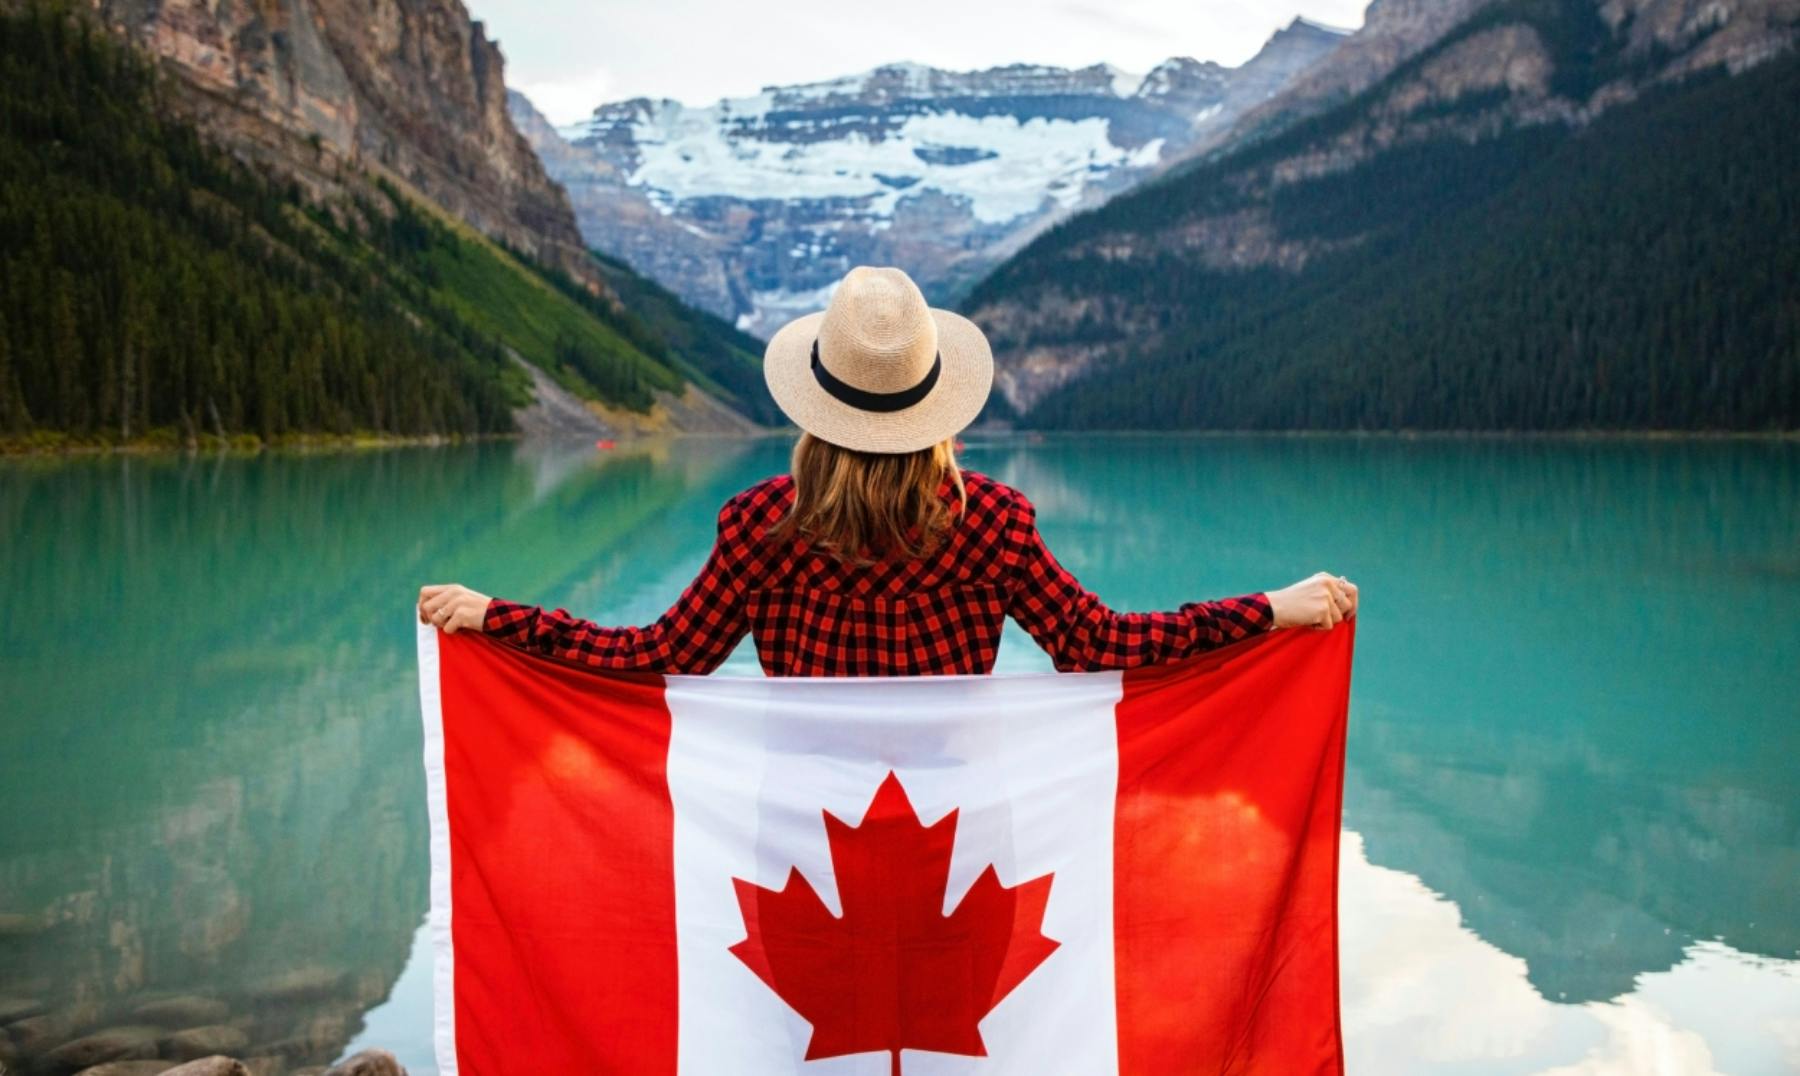 Patrimonios de la Humanidad en Canadá | 19 Destinos que descubrir